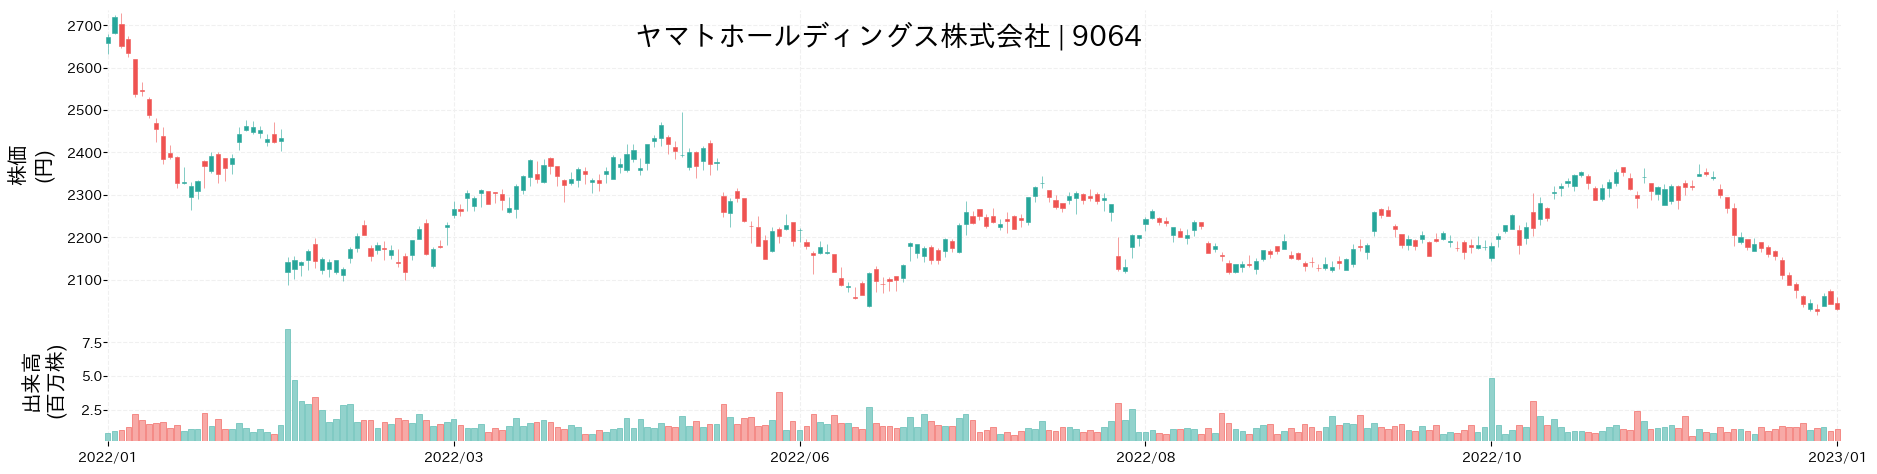 ヤマトホールディングスの株価推移(2022)